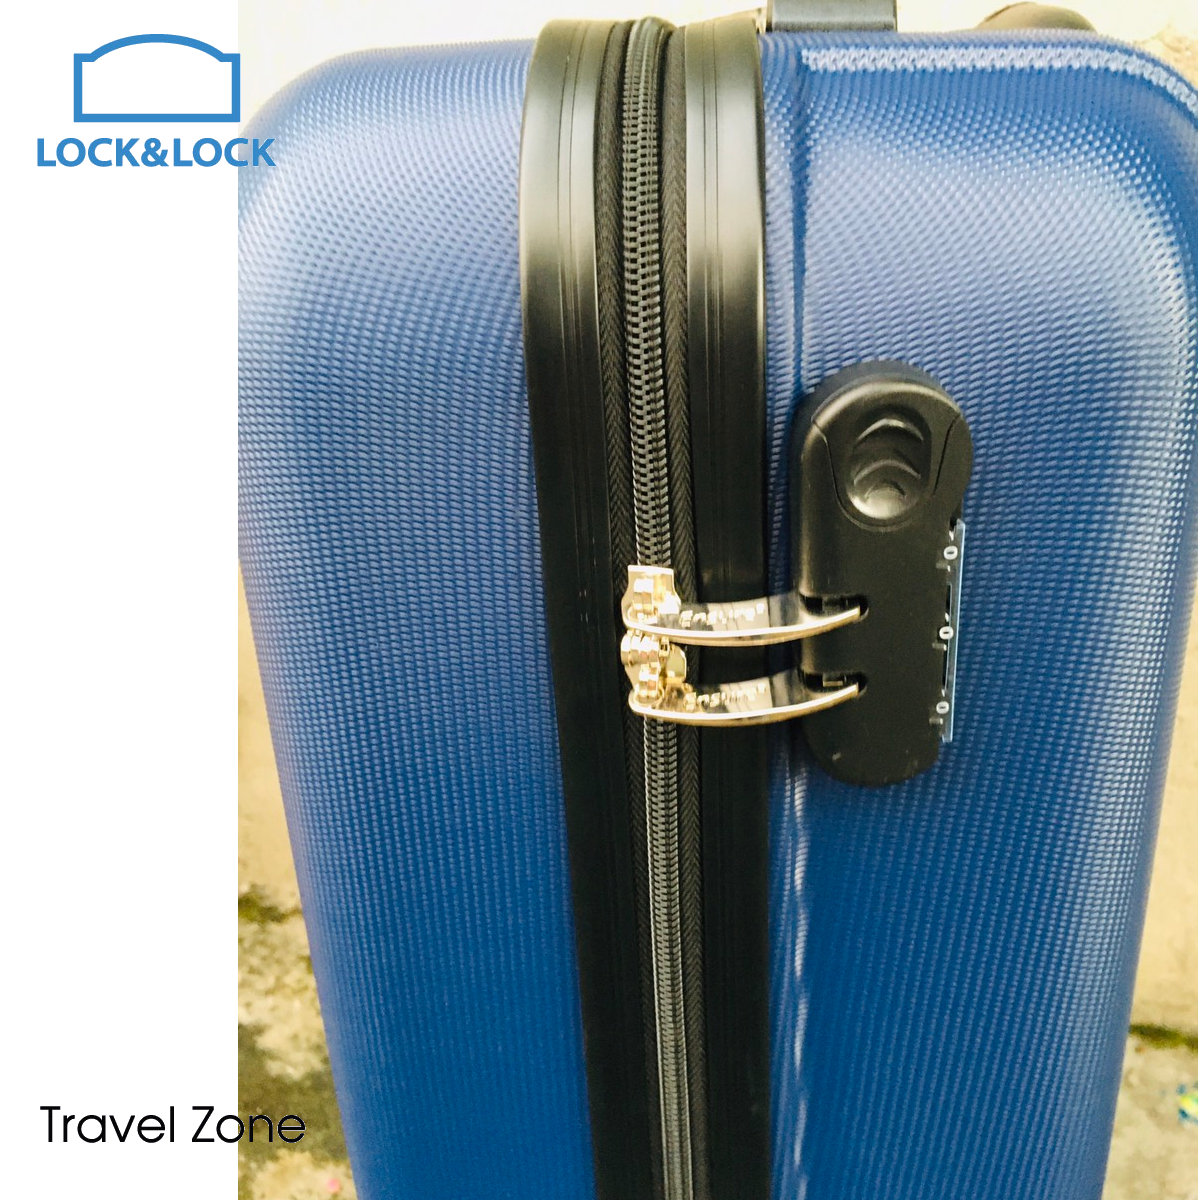 Vali du lịch xách tay có khóa số Lock&Lock Travel Zone LTZ615BLU 20inch